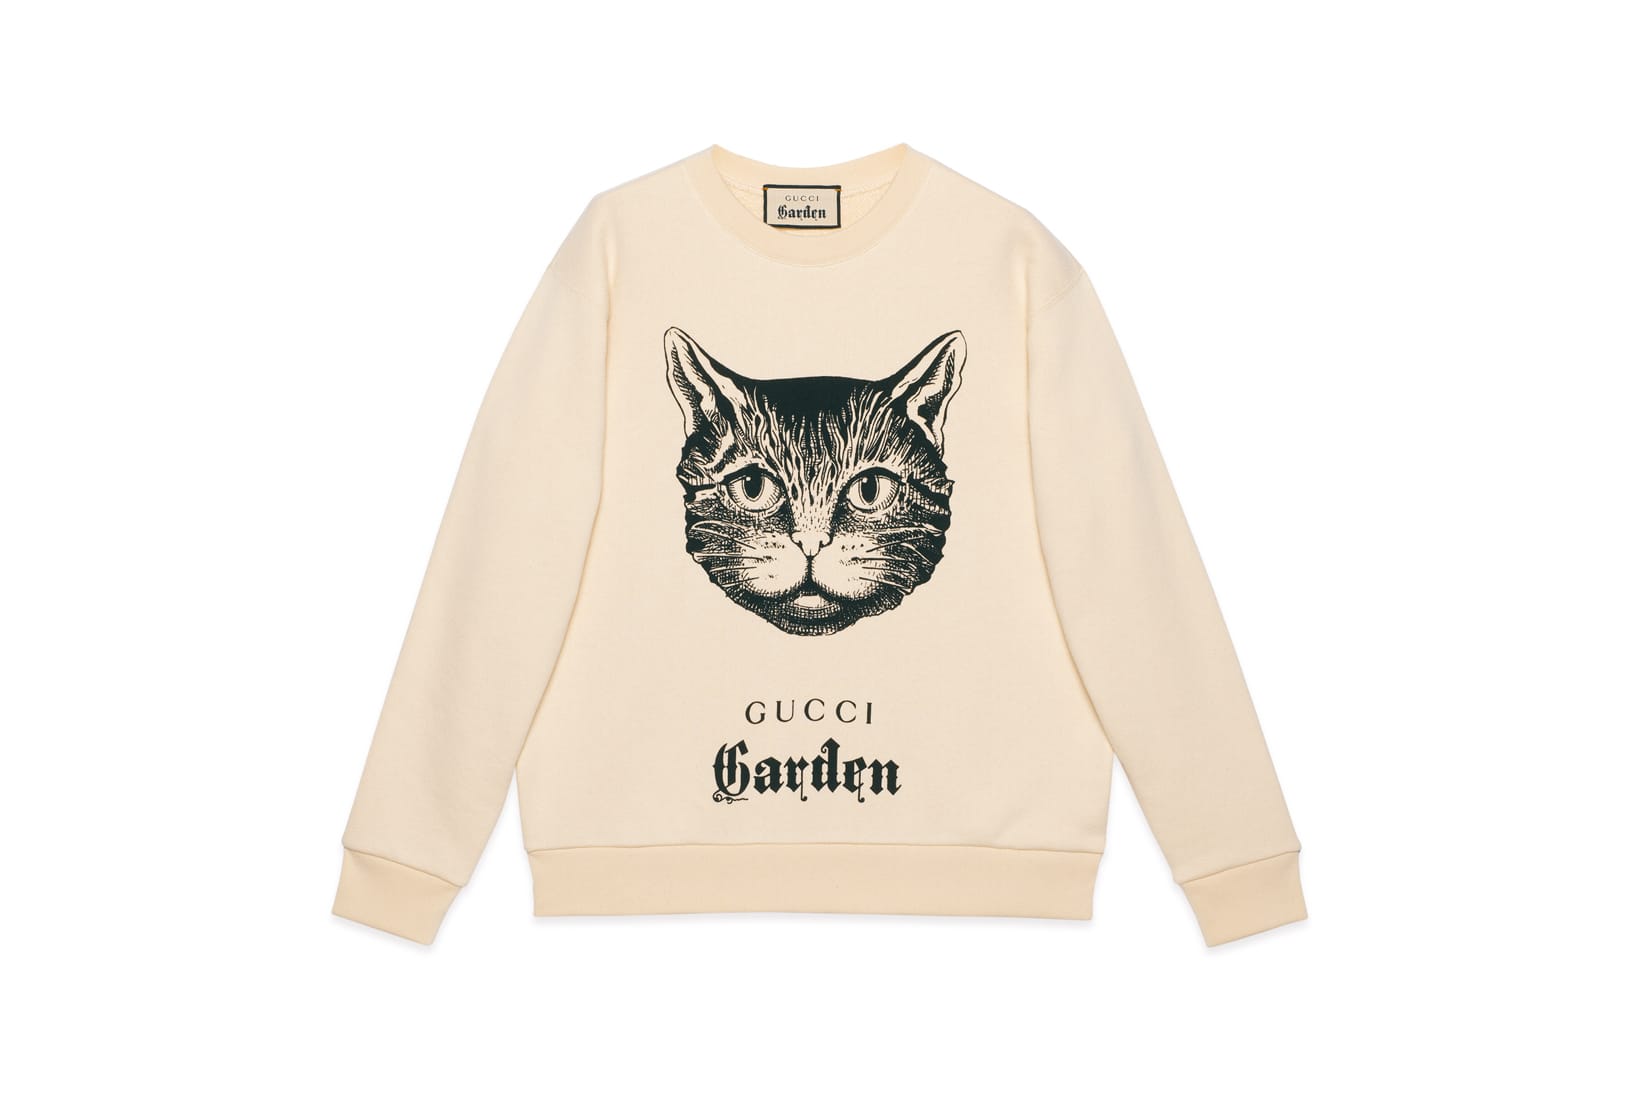 gucci garden hoodie